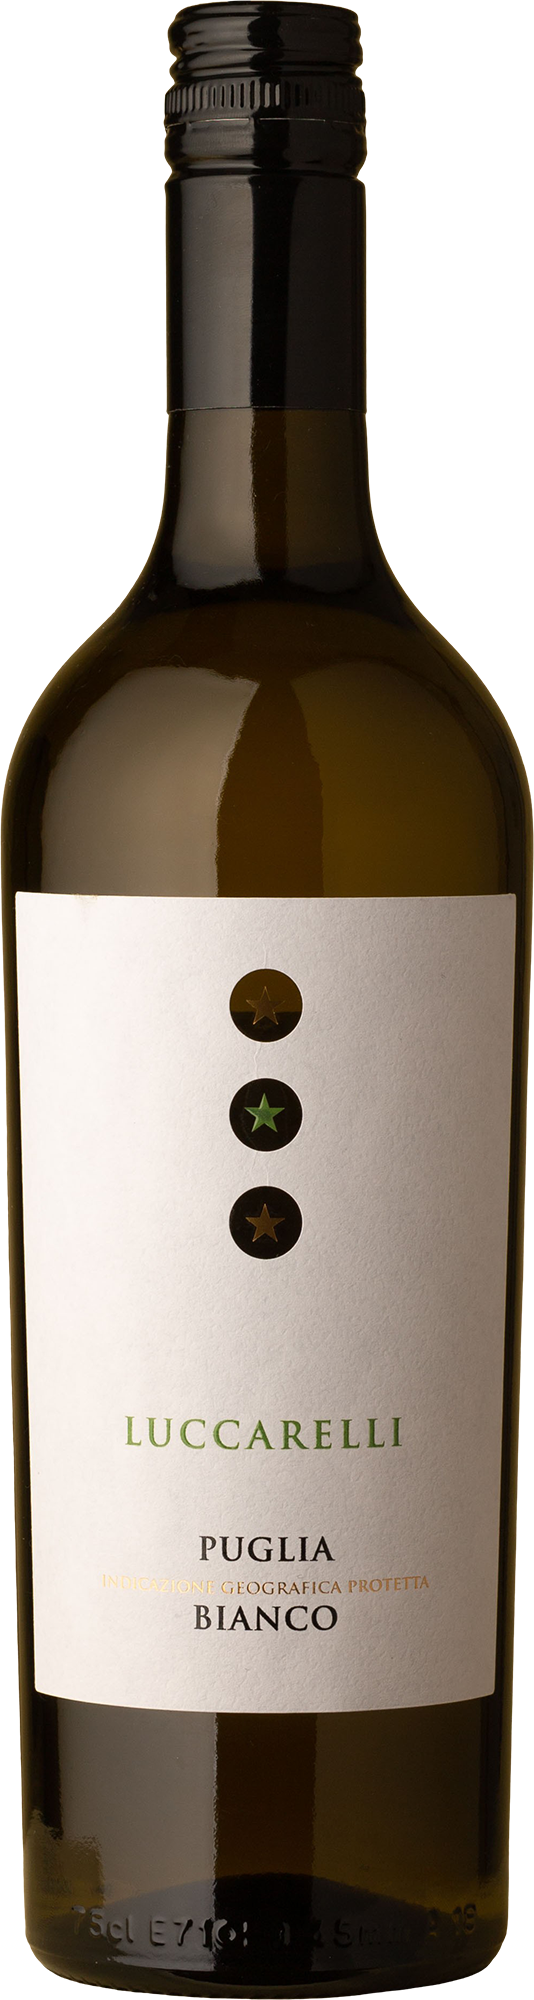 Luccarelli - Bianco 2020 White Wine